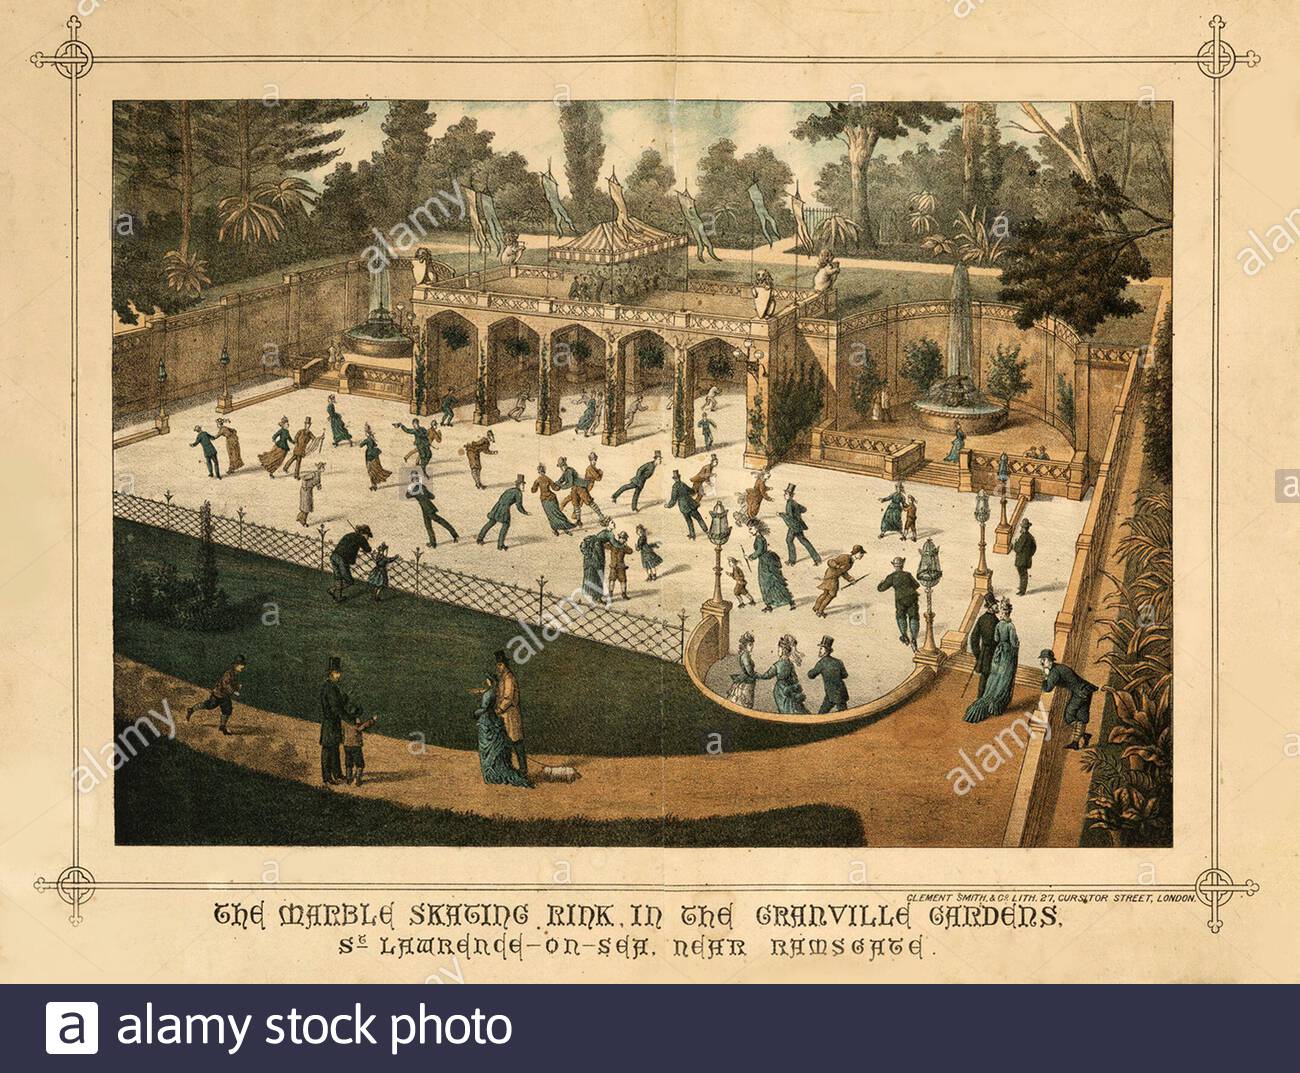 La patinoire en marbre de Granville Gardens, Saint-Laurent-on-Sea, près de Ramsgate, illustration ancienne de 1882 Banque D'Images